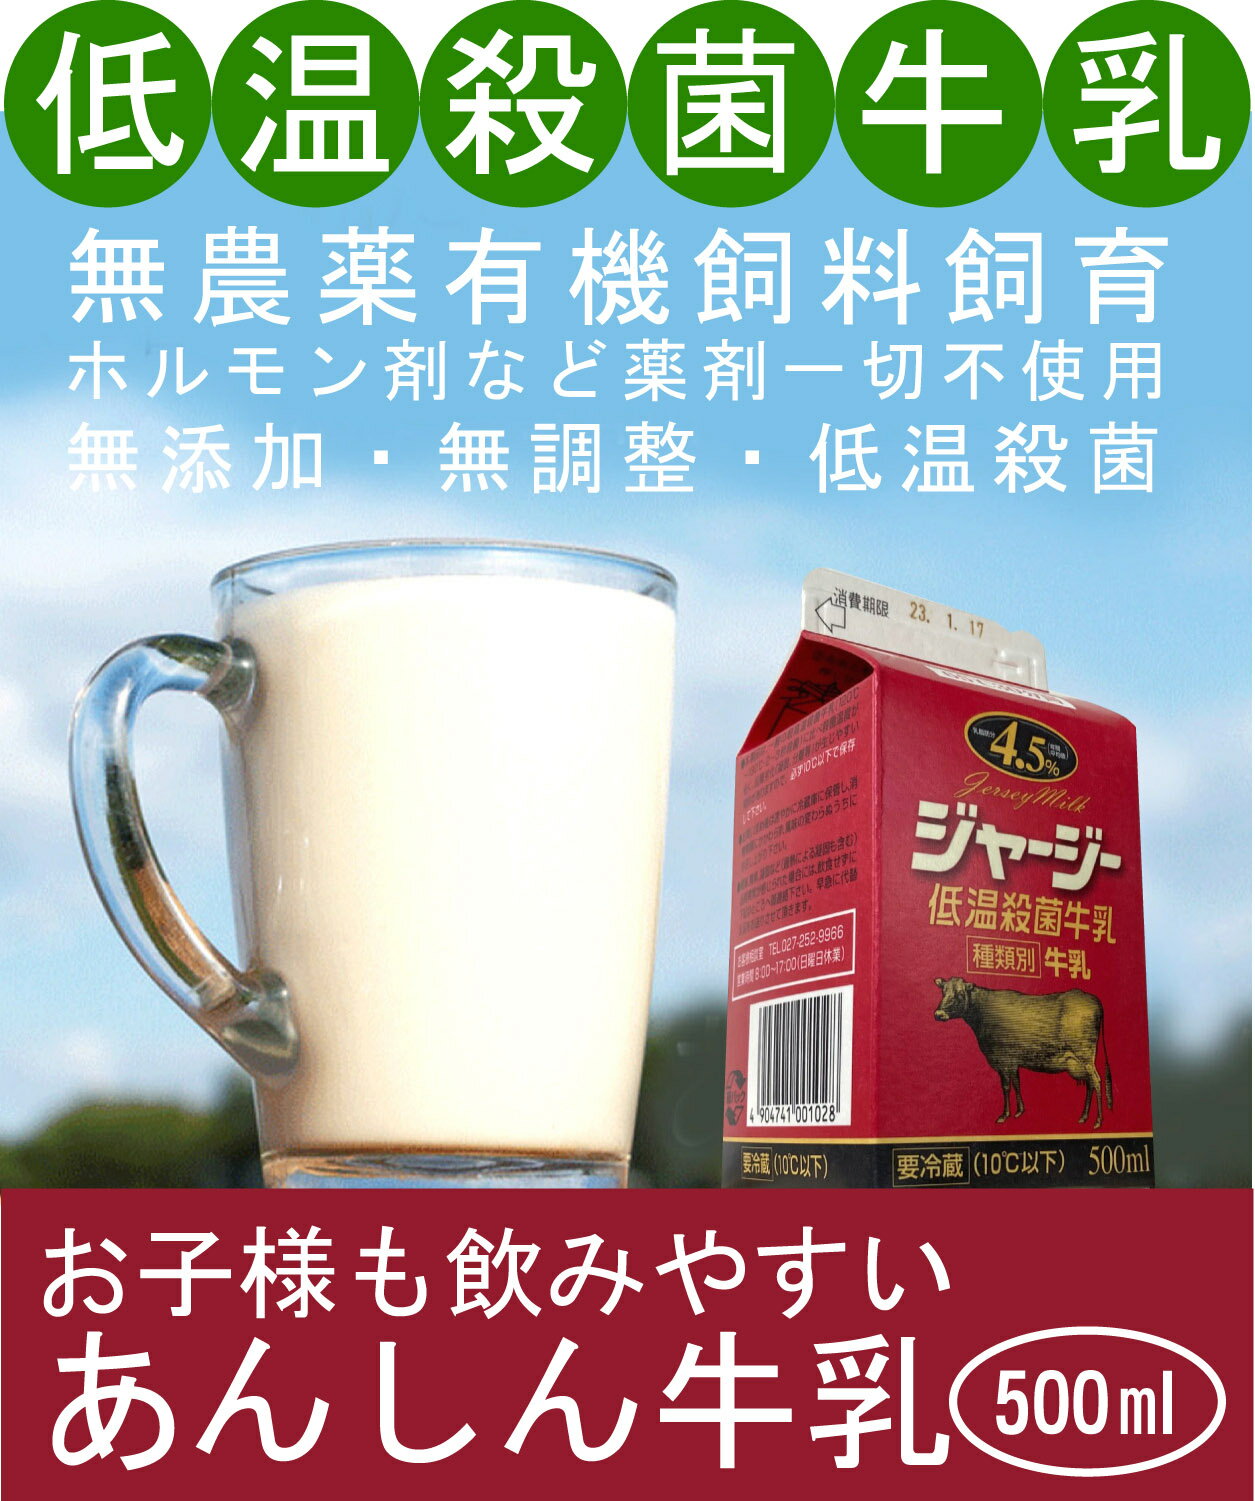 牛乳の中では最も品質の良いとされるジャージー牛乳です。 原乳は清泉寮で有名な清里のキープ農場のものを使用。 飼料は粗飼料が主で農薬、化学肥料を一切使用しておりません。 濃厚飼料は遺伝子組換えのものは一切使用しておりません。 65℃30分の低温保持殺菌でジャージー牛乳の特徴でもある風味と コクを壊していません。 【アニマルウェルフェア】とは 動物福祉 動物に負担をかけないという意味です。 1、飢えと渇きからの自由 2、肉体的苦痛と不快からの自由 3、傷み、苦痛、病気からの自由 4、通常行動からの自由 5、恐怖や悲しみからの自由 ★沖縄、北海道、中国地方、四国、九州、遠方の方は賞味期限が約1・2日になりますのでご注意ください。 ★発送日は月曜・金曜となります。○名称:牛乳 ○商品名：ジャージー低温殺菌牛乳 ○無脂乳固形分：8.5%以上 ○乳脂肪分：4.2%以上 ○原材料名：生乳100％ ○低温殺菌：65℃30分間 ○内容量：500ml ○賞味期限：パックに記載 ○保存方法：要冷蔵10℃以下 ○開封後の取扱：要冷蔵10℃以下にて保存し、なるべく早くお飲みください。 ○製造所所在地：群馬県前橋市 ○製造者：タカハシ乳業 別途クール便代が必要です。【注】冷凍商品とは同梱できません。お子様に飲みやすく あんしんな牛乳。 牛乳の中では最も品質の良いとされるジャージー牛乳です。 原乳は清泉寮で有名な清里のキープ農場のものを使用。 飼料は粗飼料が主で農薬、化学肥料を一切使用しておりません。 濃厚飼料は遺伝子組換えのものは一切使用しておりません。 65℃30分の低温保持殺菌でジャージー牛乳の特徴でもある風味と コクを壊していません。 ★沖縄、北海道、中国地方、四国、九州、遠方の方は賞味期限が約1・2日になりますのでご注意ください。